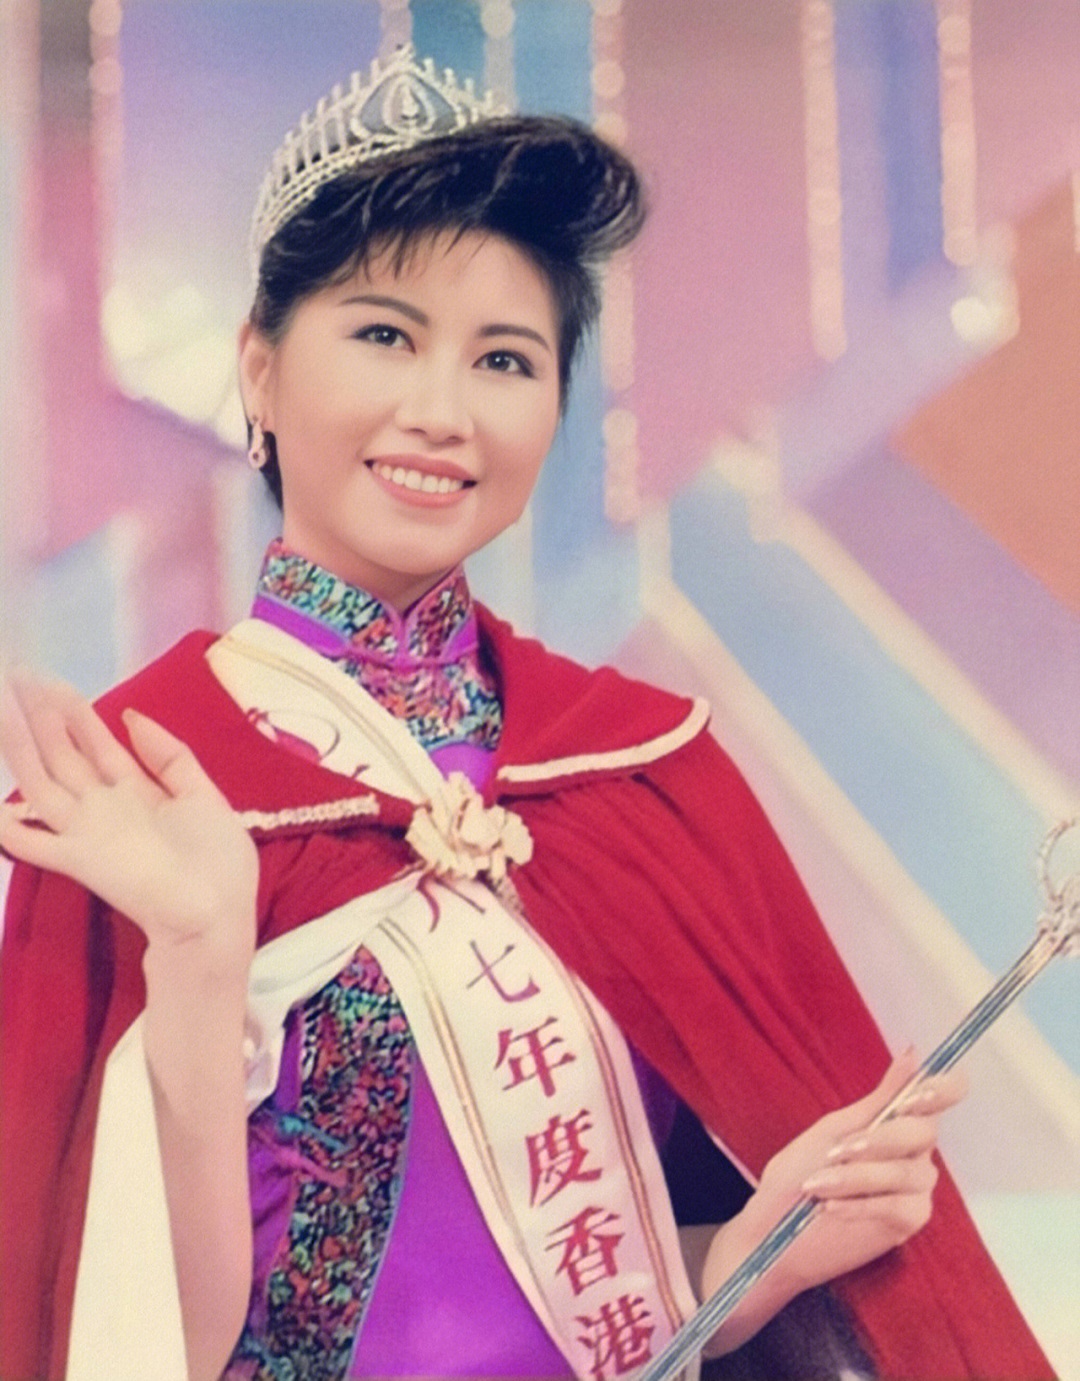 当时视朱玲玲为偶像并暗自发誓长大后要加入香港小姐94